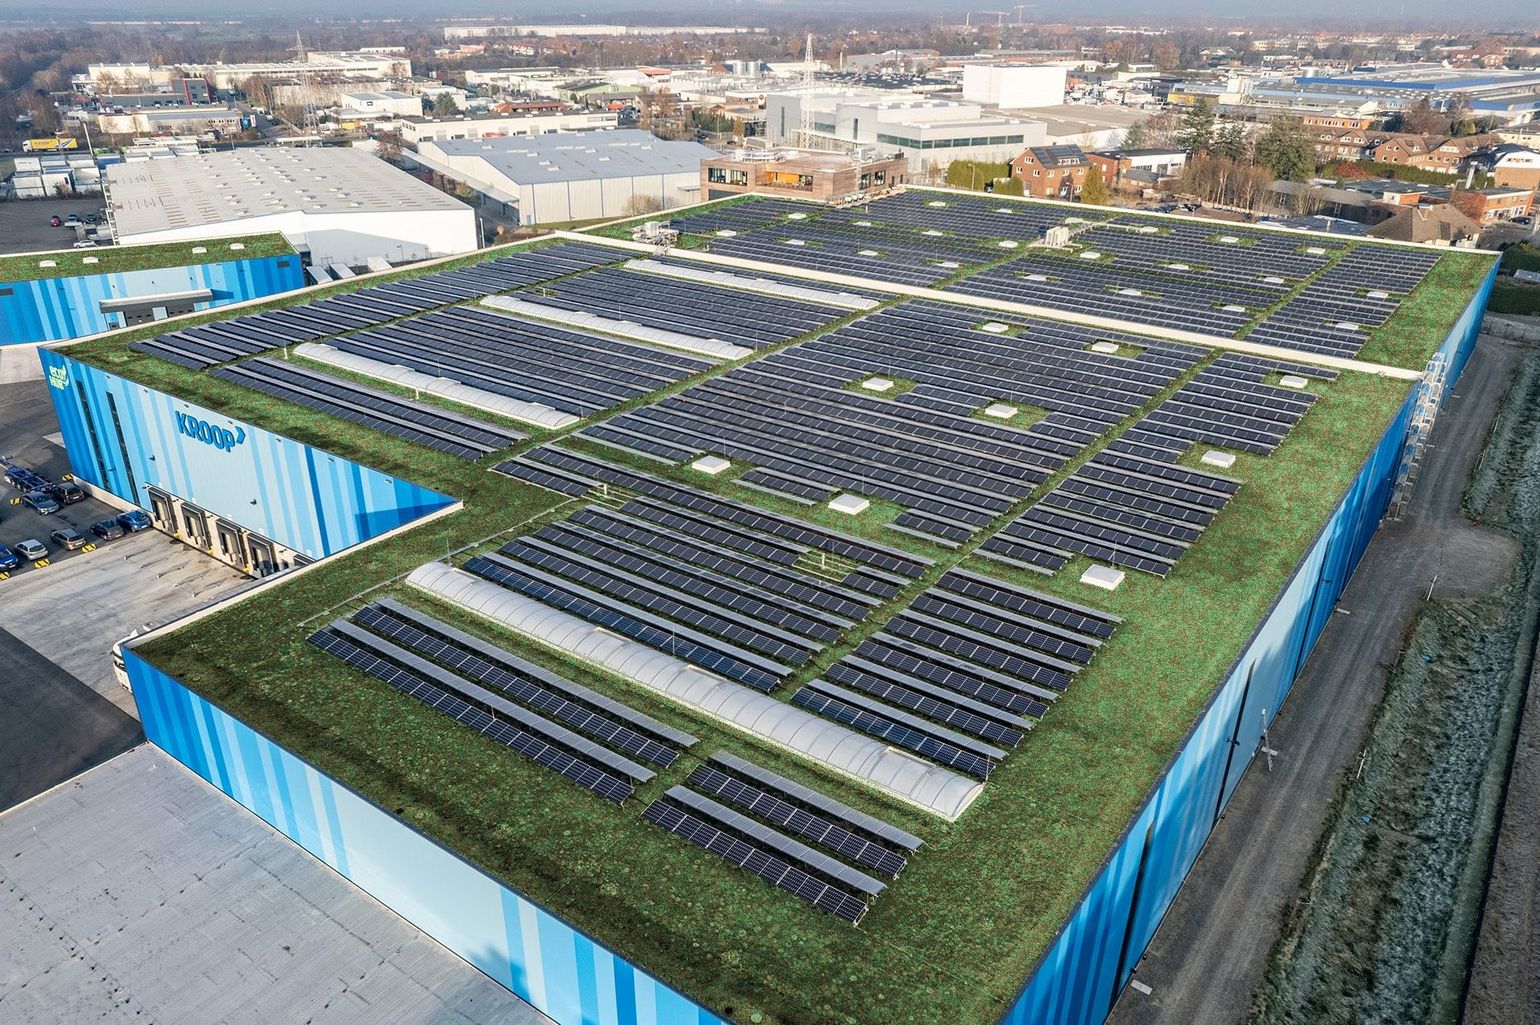 Luftaufnahme von einem Industrieleichtdach mit Photovoltaik und extensiver Dachbegrünung.